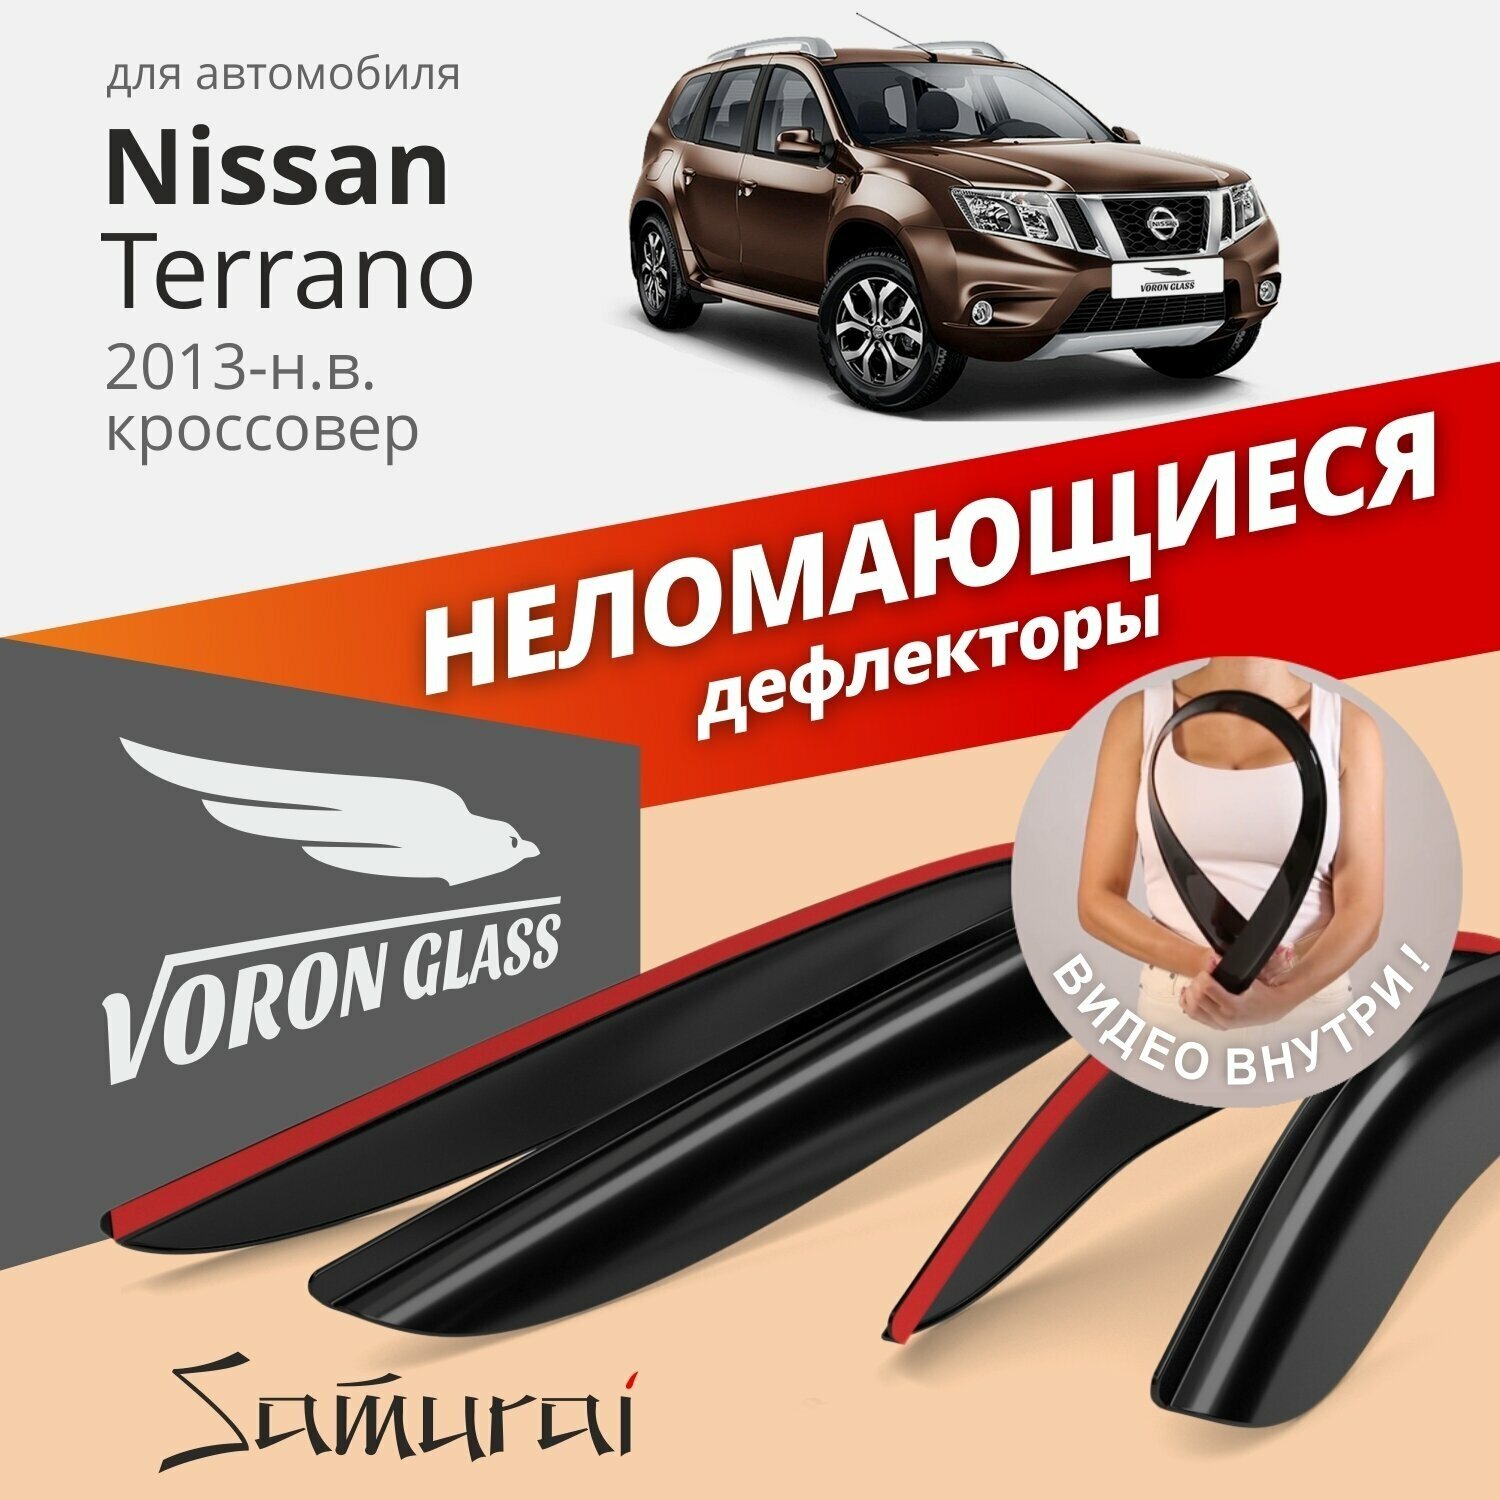 Дефлекторы окон неломающиеся Voron Glass серия Samurai для Nissan Terrano 2014-н. в. накладные 4 шт.